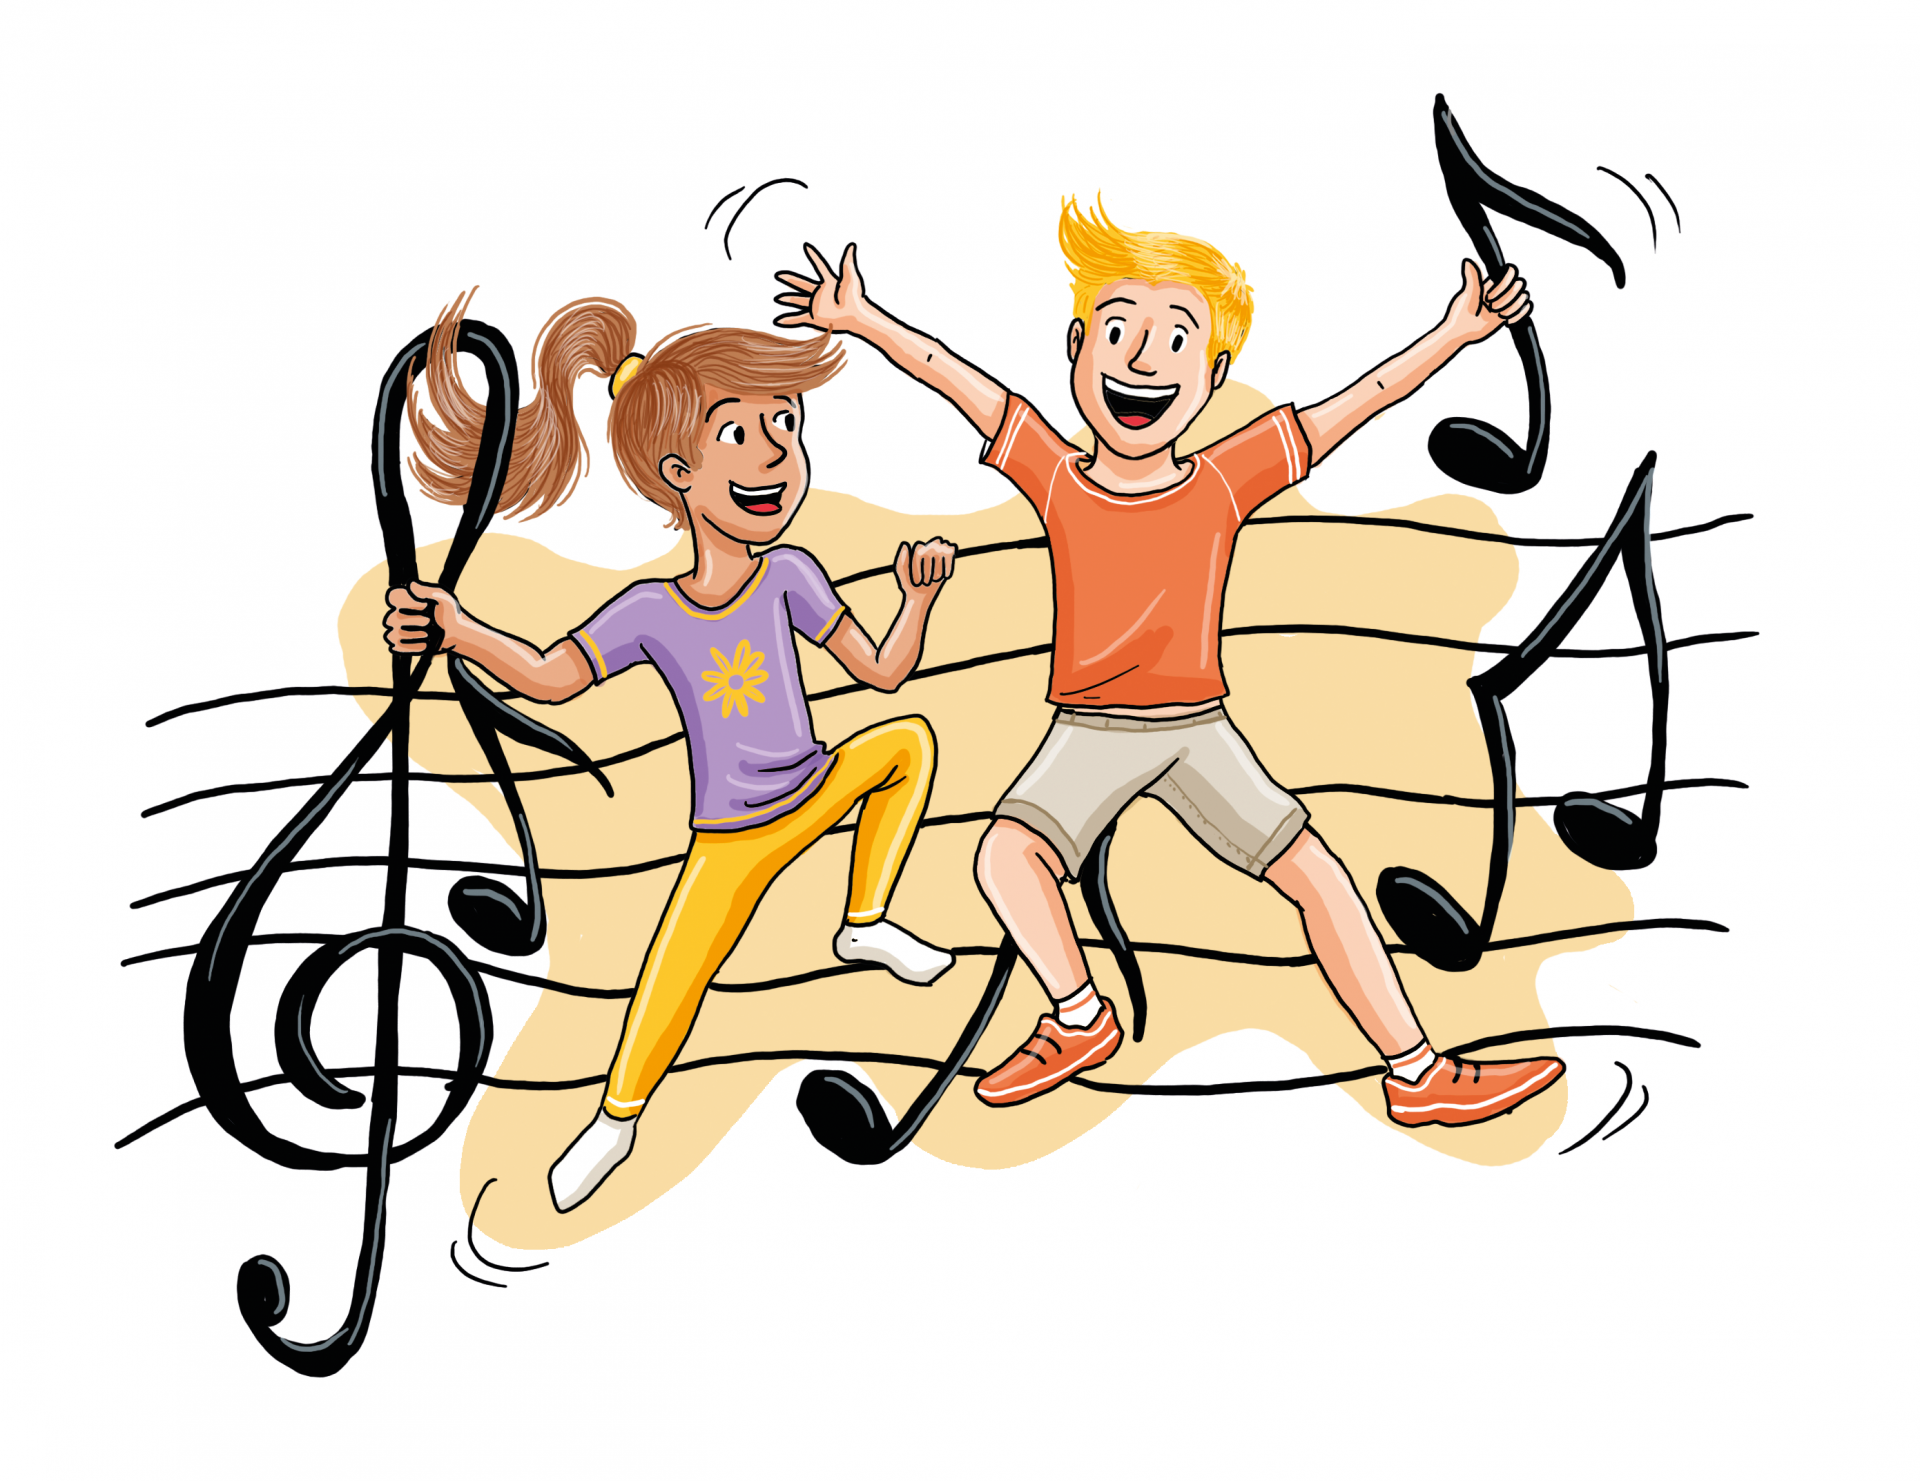 Disegno: due bambini ballano su uno spartito con delle note musicali